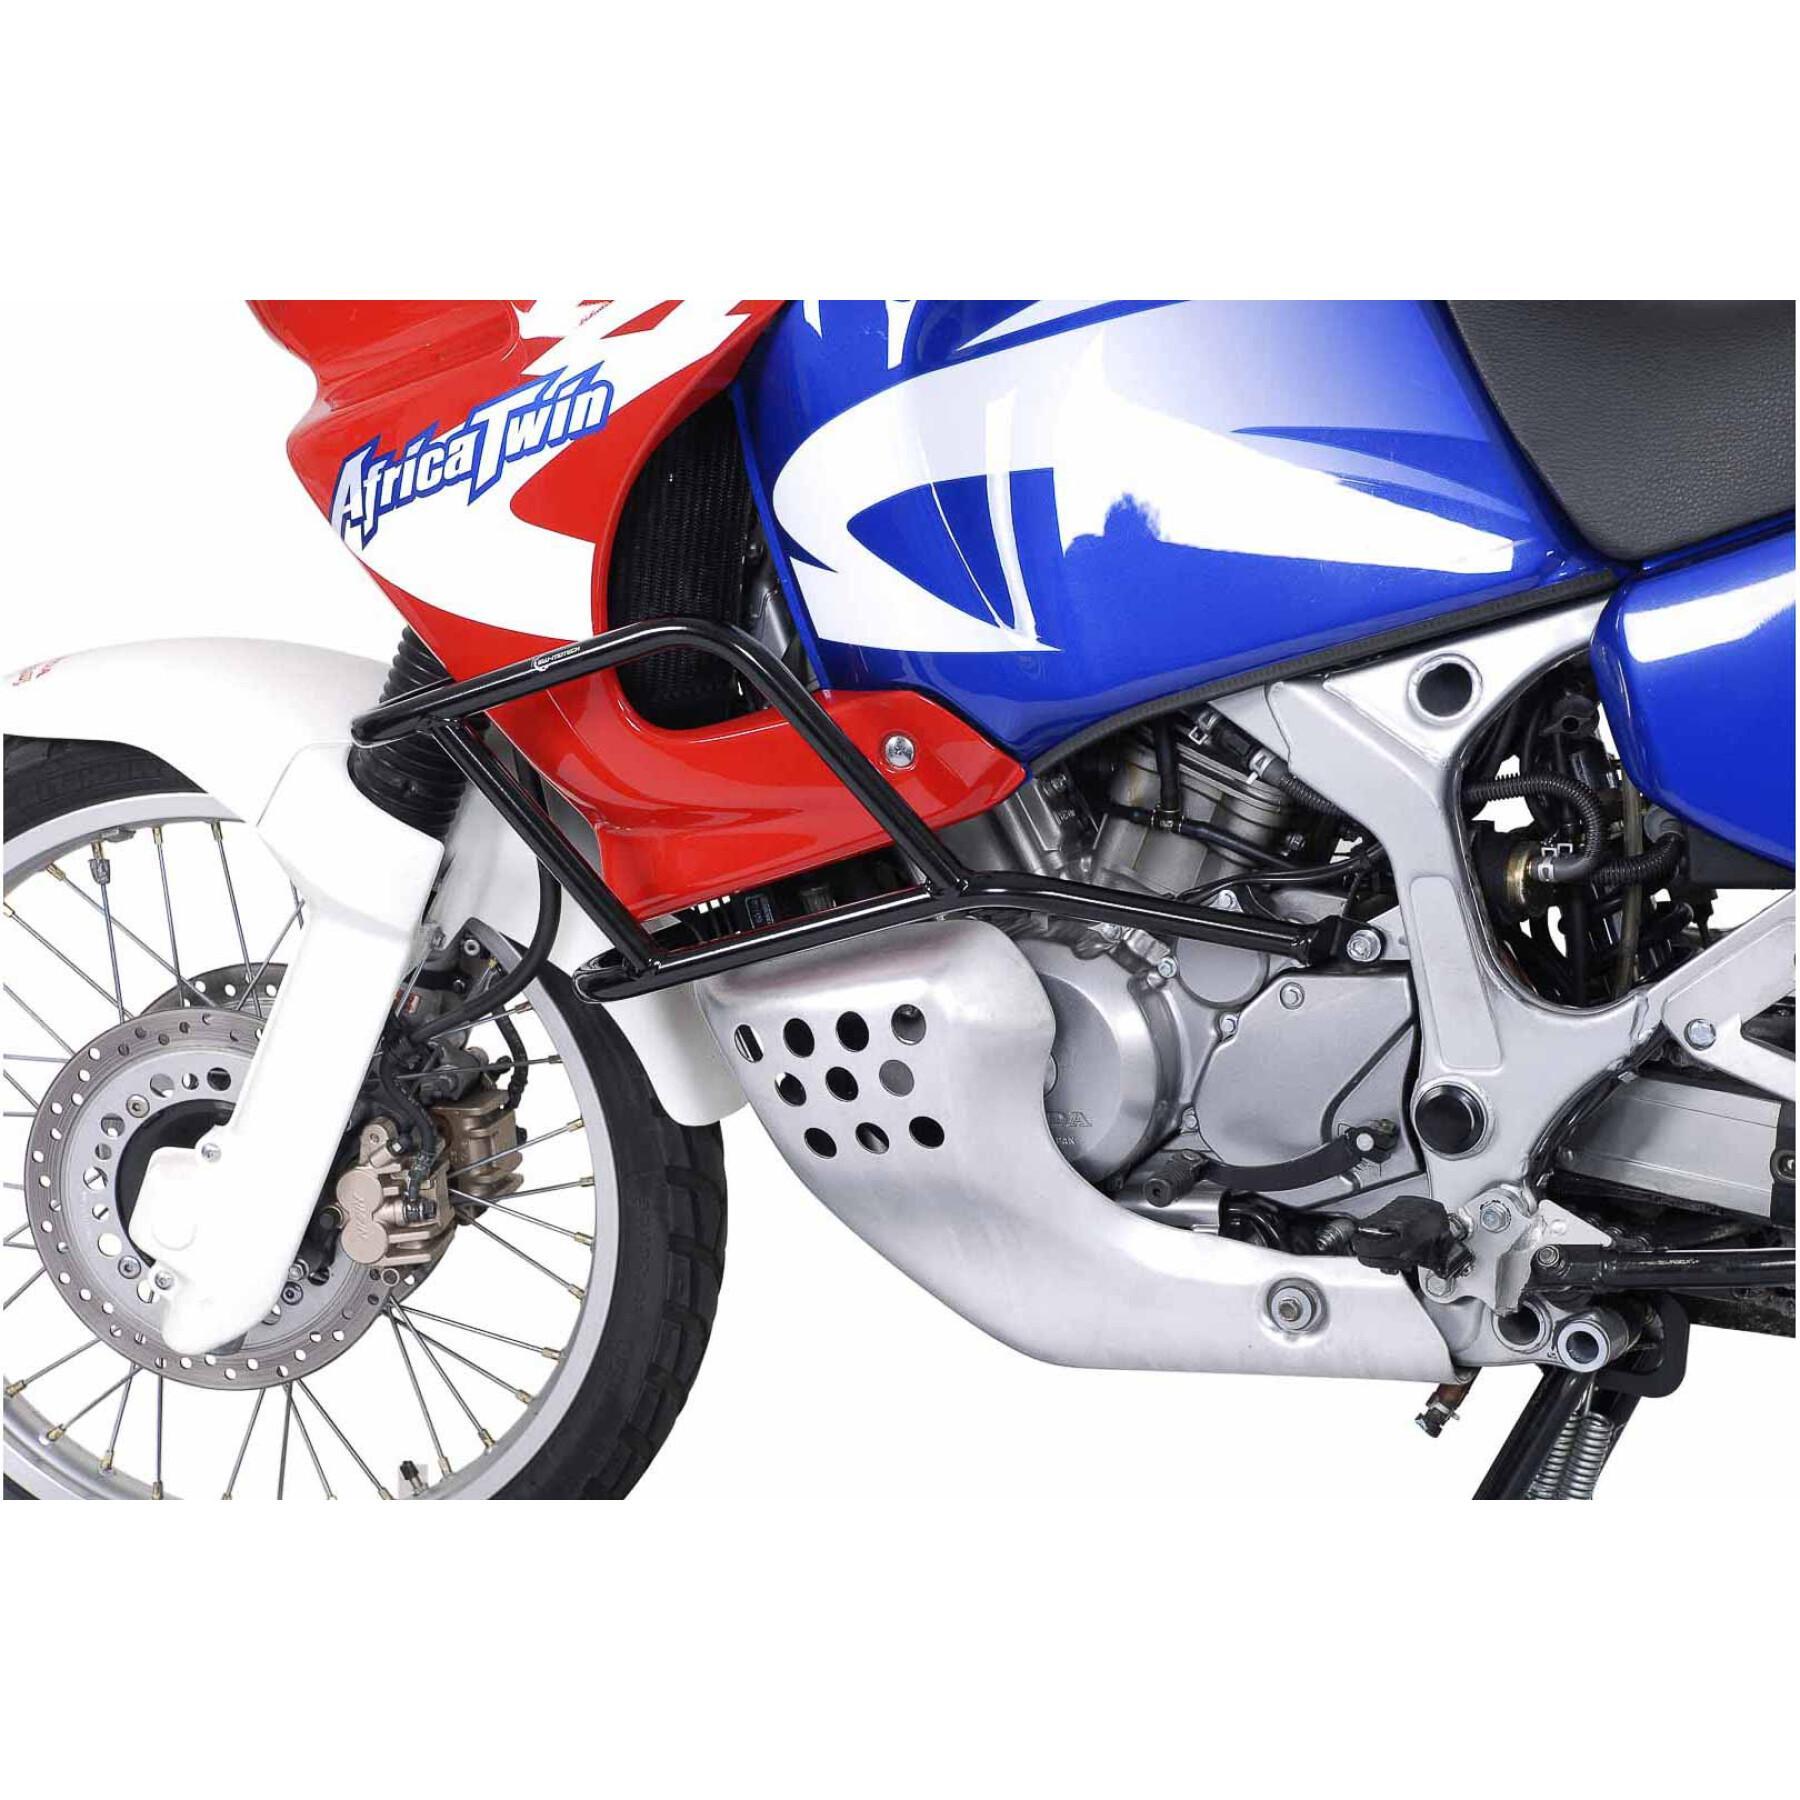 Protecciones para motos Sw-Motech Crashbar Honda Xrv 750 Africa Twin (93-03)